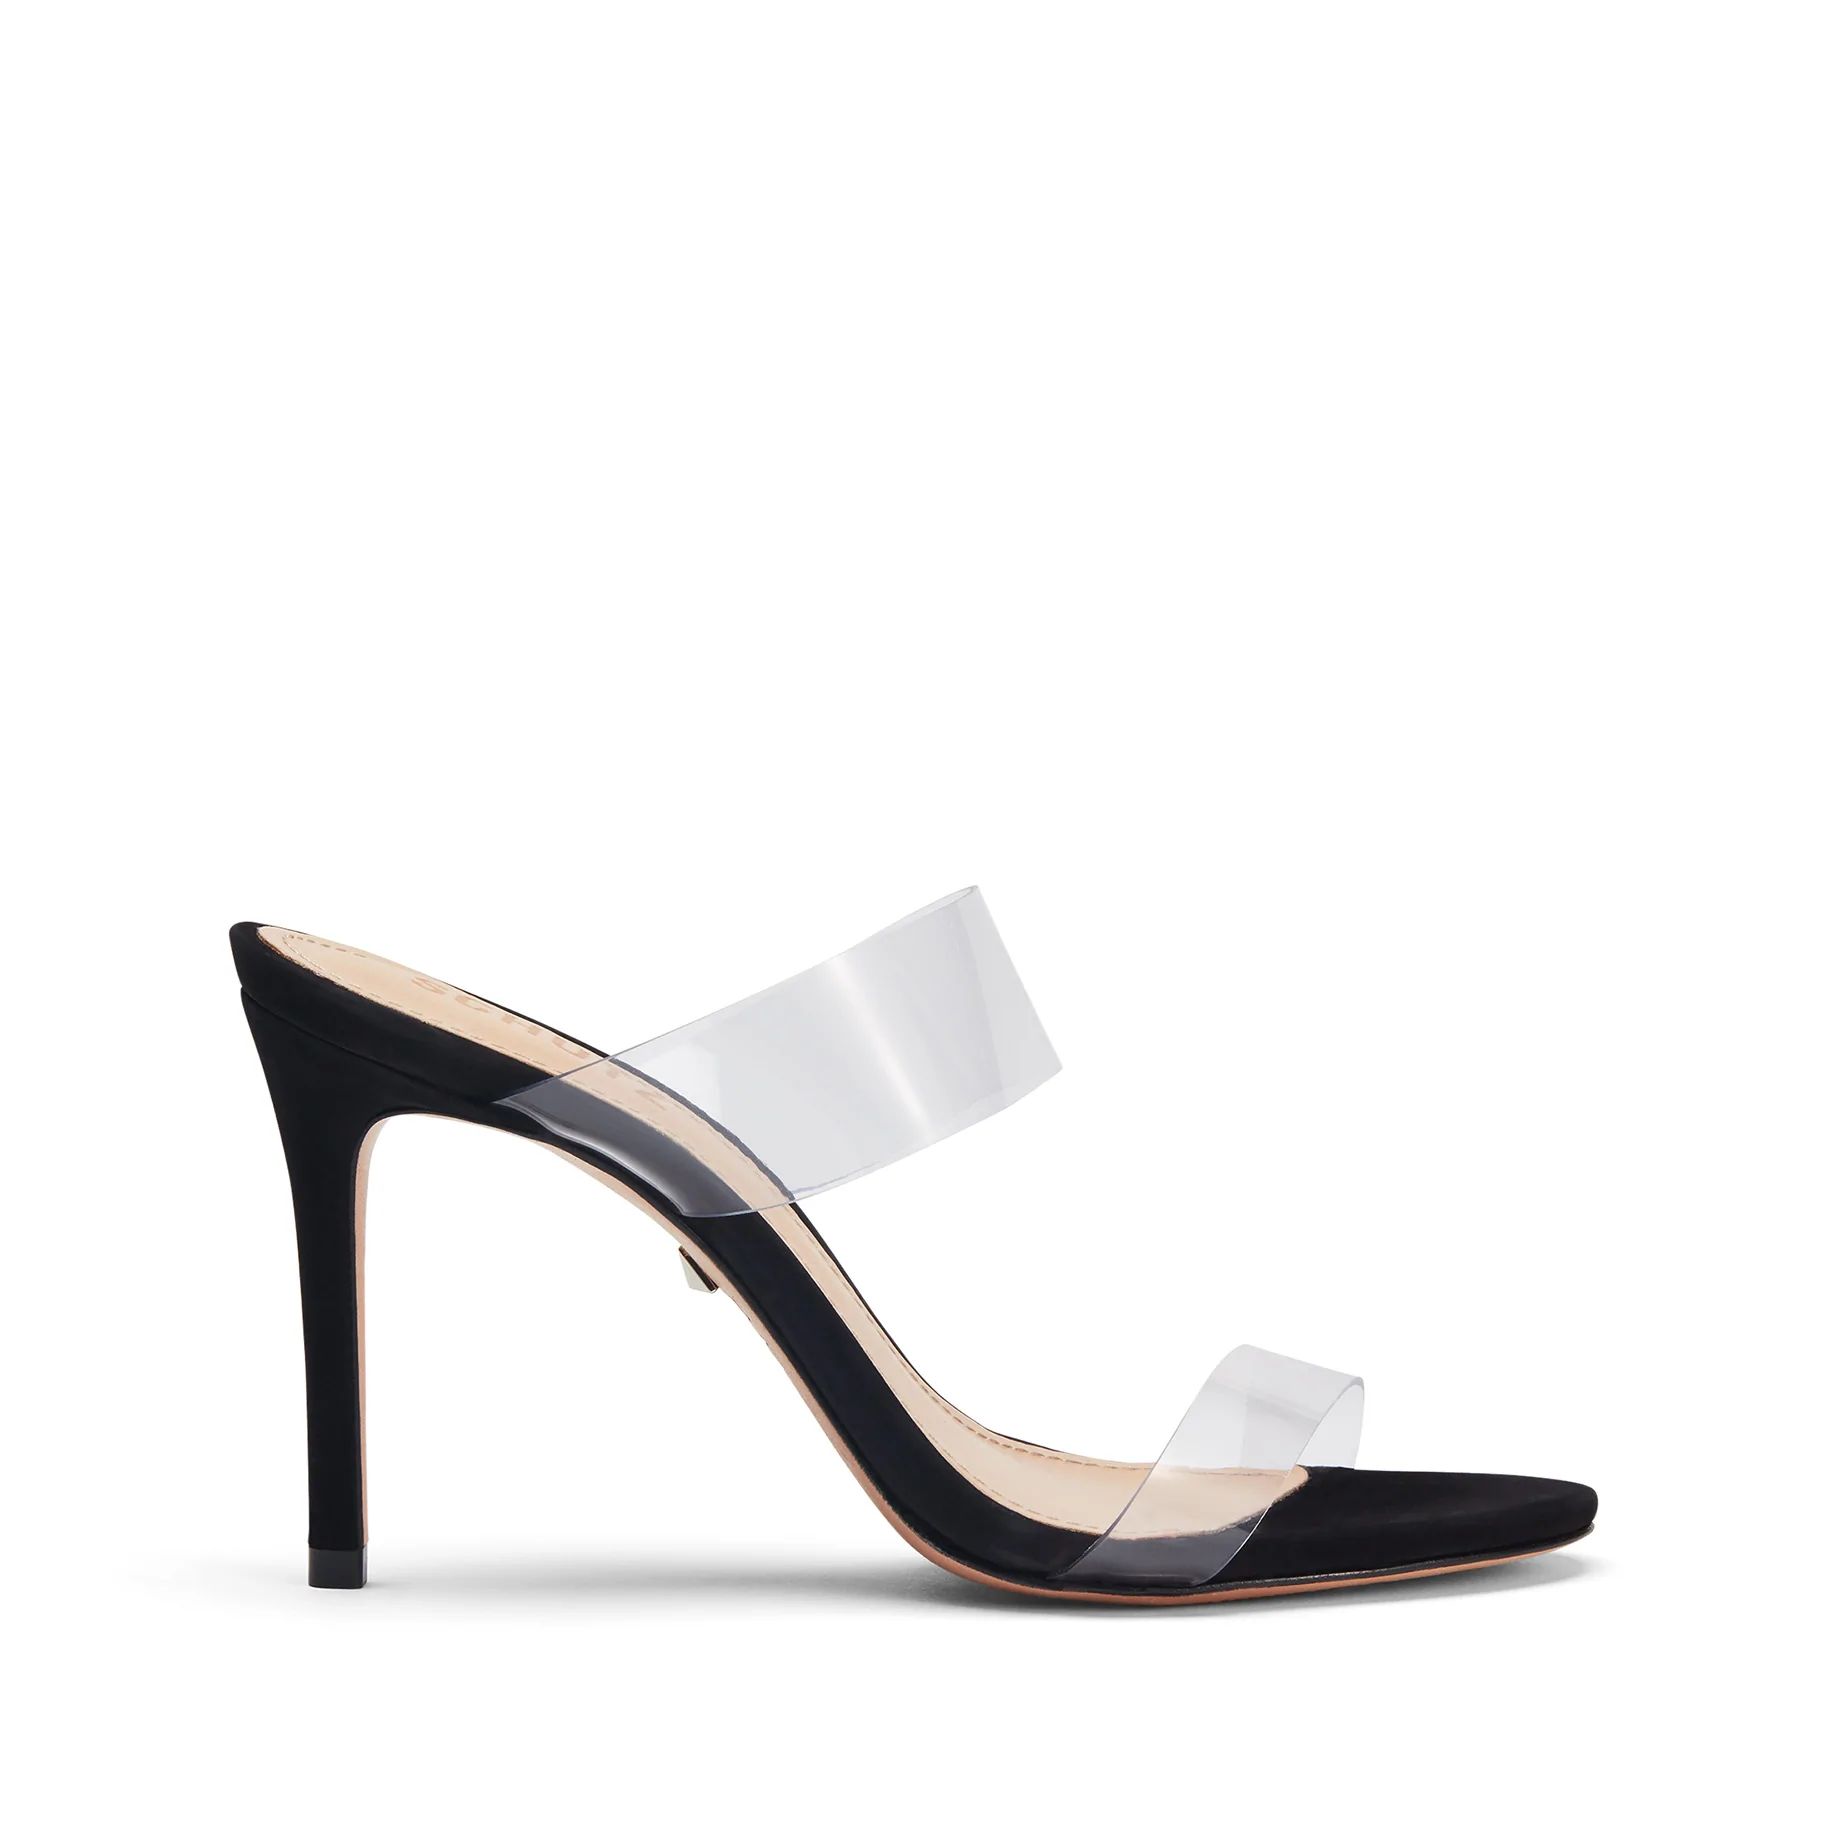 Ariella Sandal: Vinyl Straps and a Stiletto Heel | Schutz | Schutz Shoes (US)